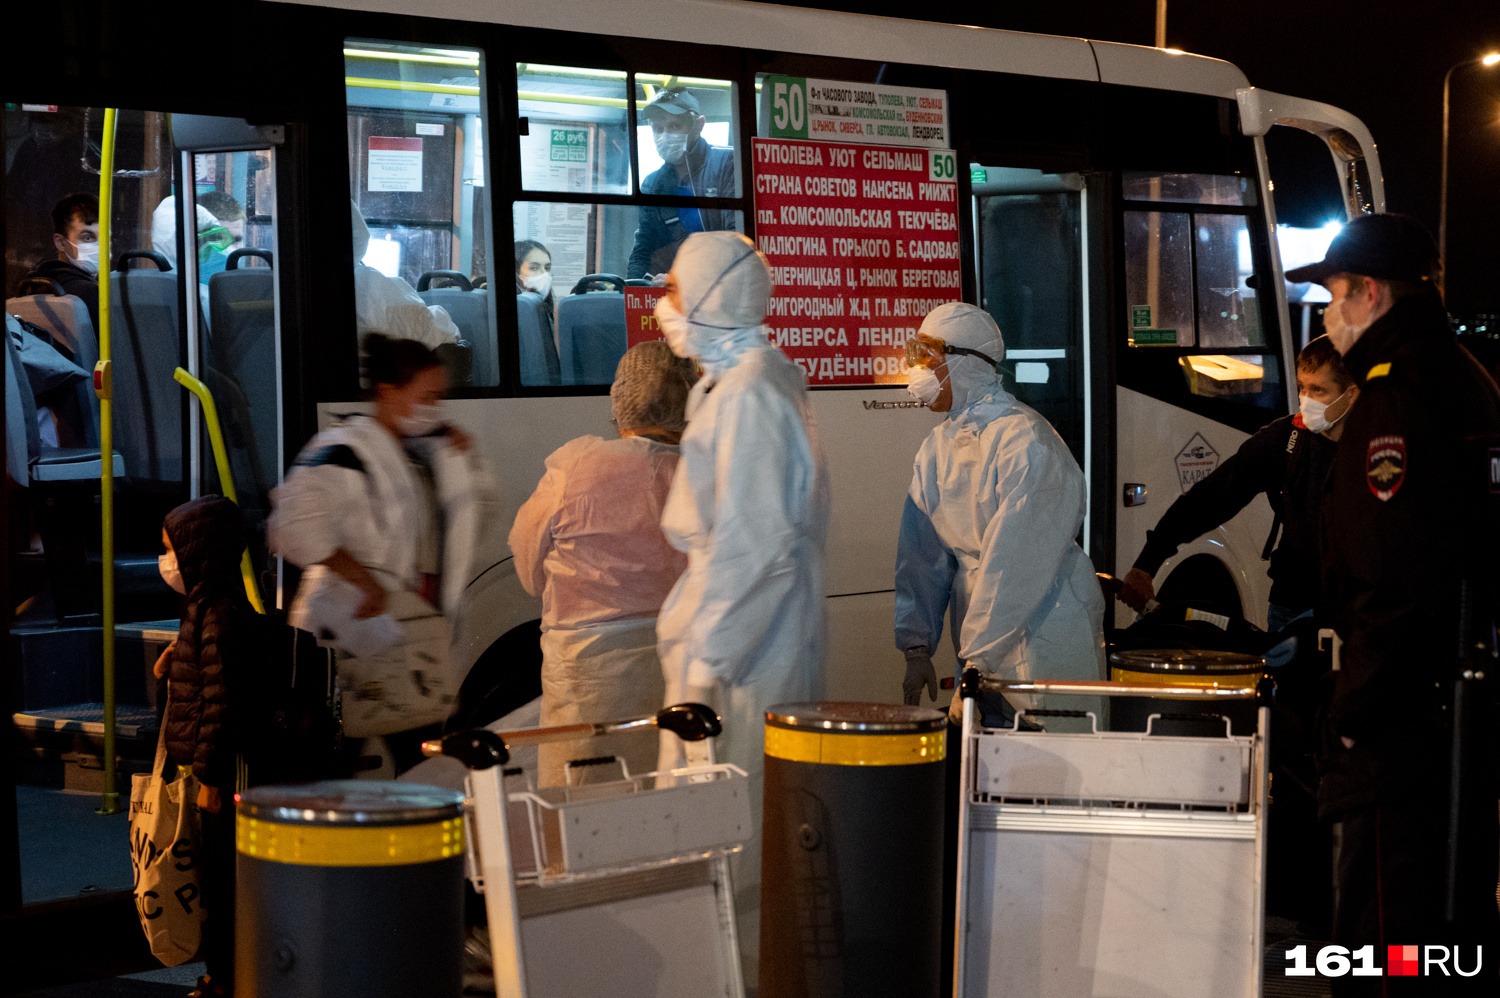 Медики и сотрудники Роспотребнадзора распределили прибывших по автобусам — в зависимости от места проживания. Всех развезли по домам на самоизоляцию